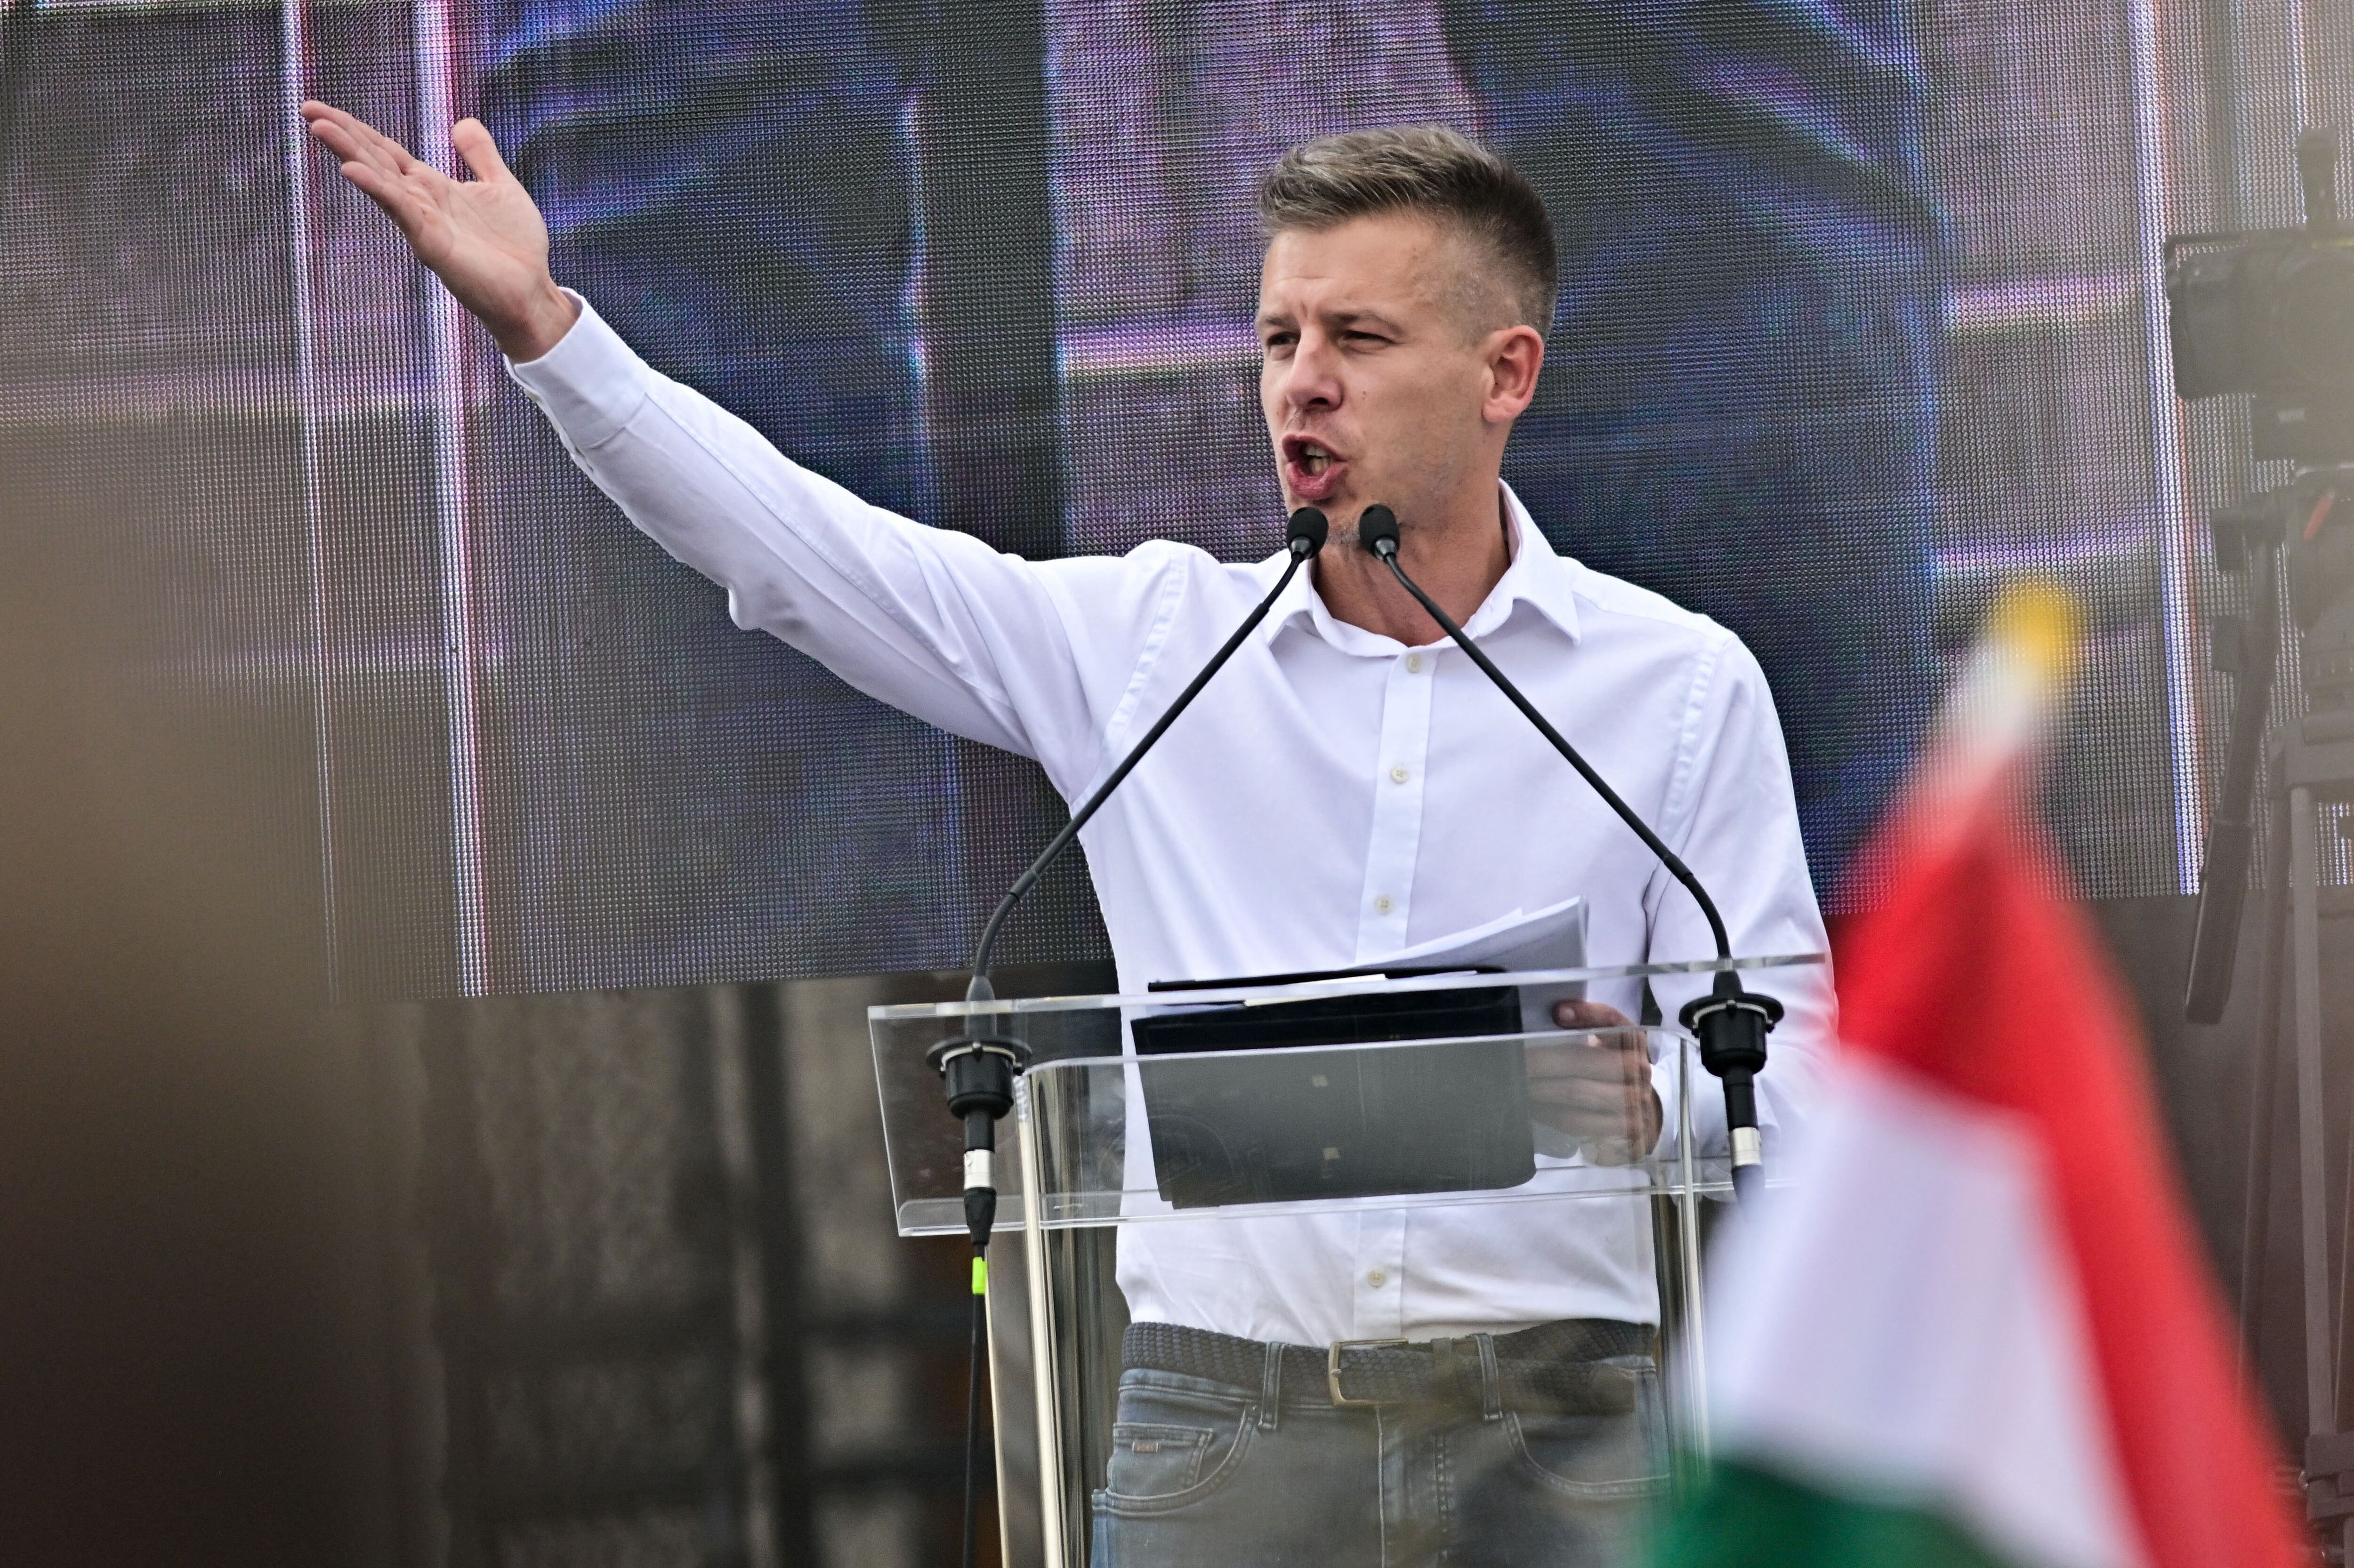 Magyar es ahora el principal opositor de Orbán y ya adelantó que participará de las elecciones europeas (REUTERS)